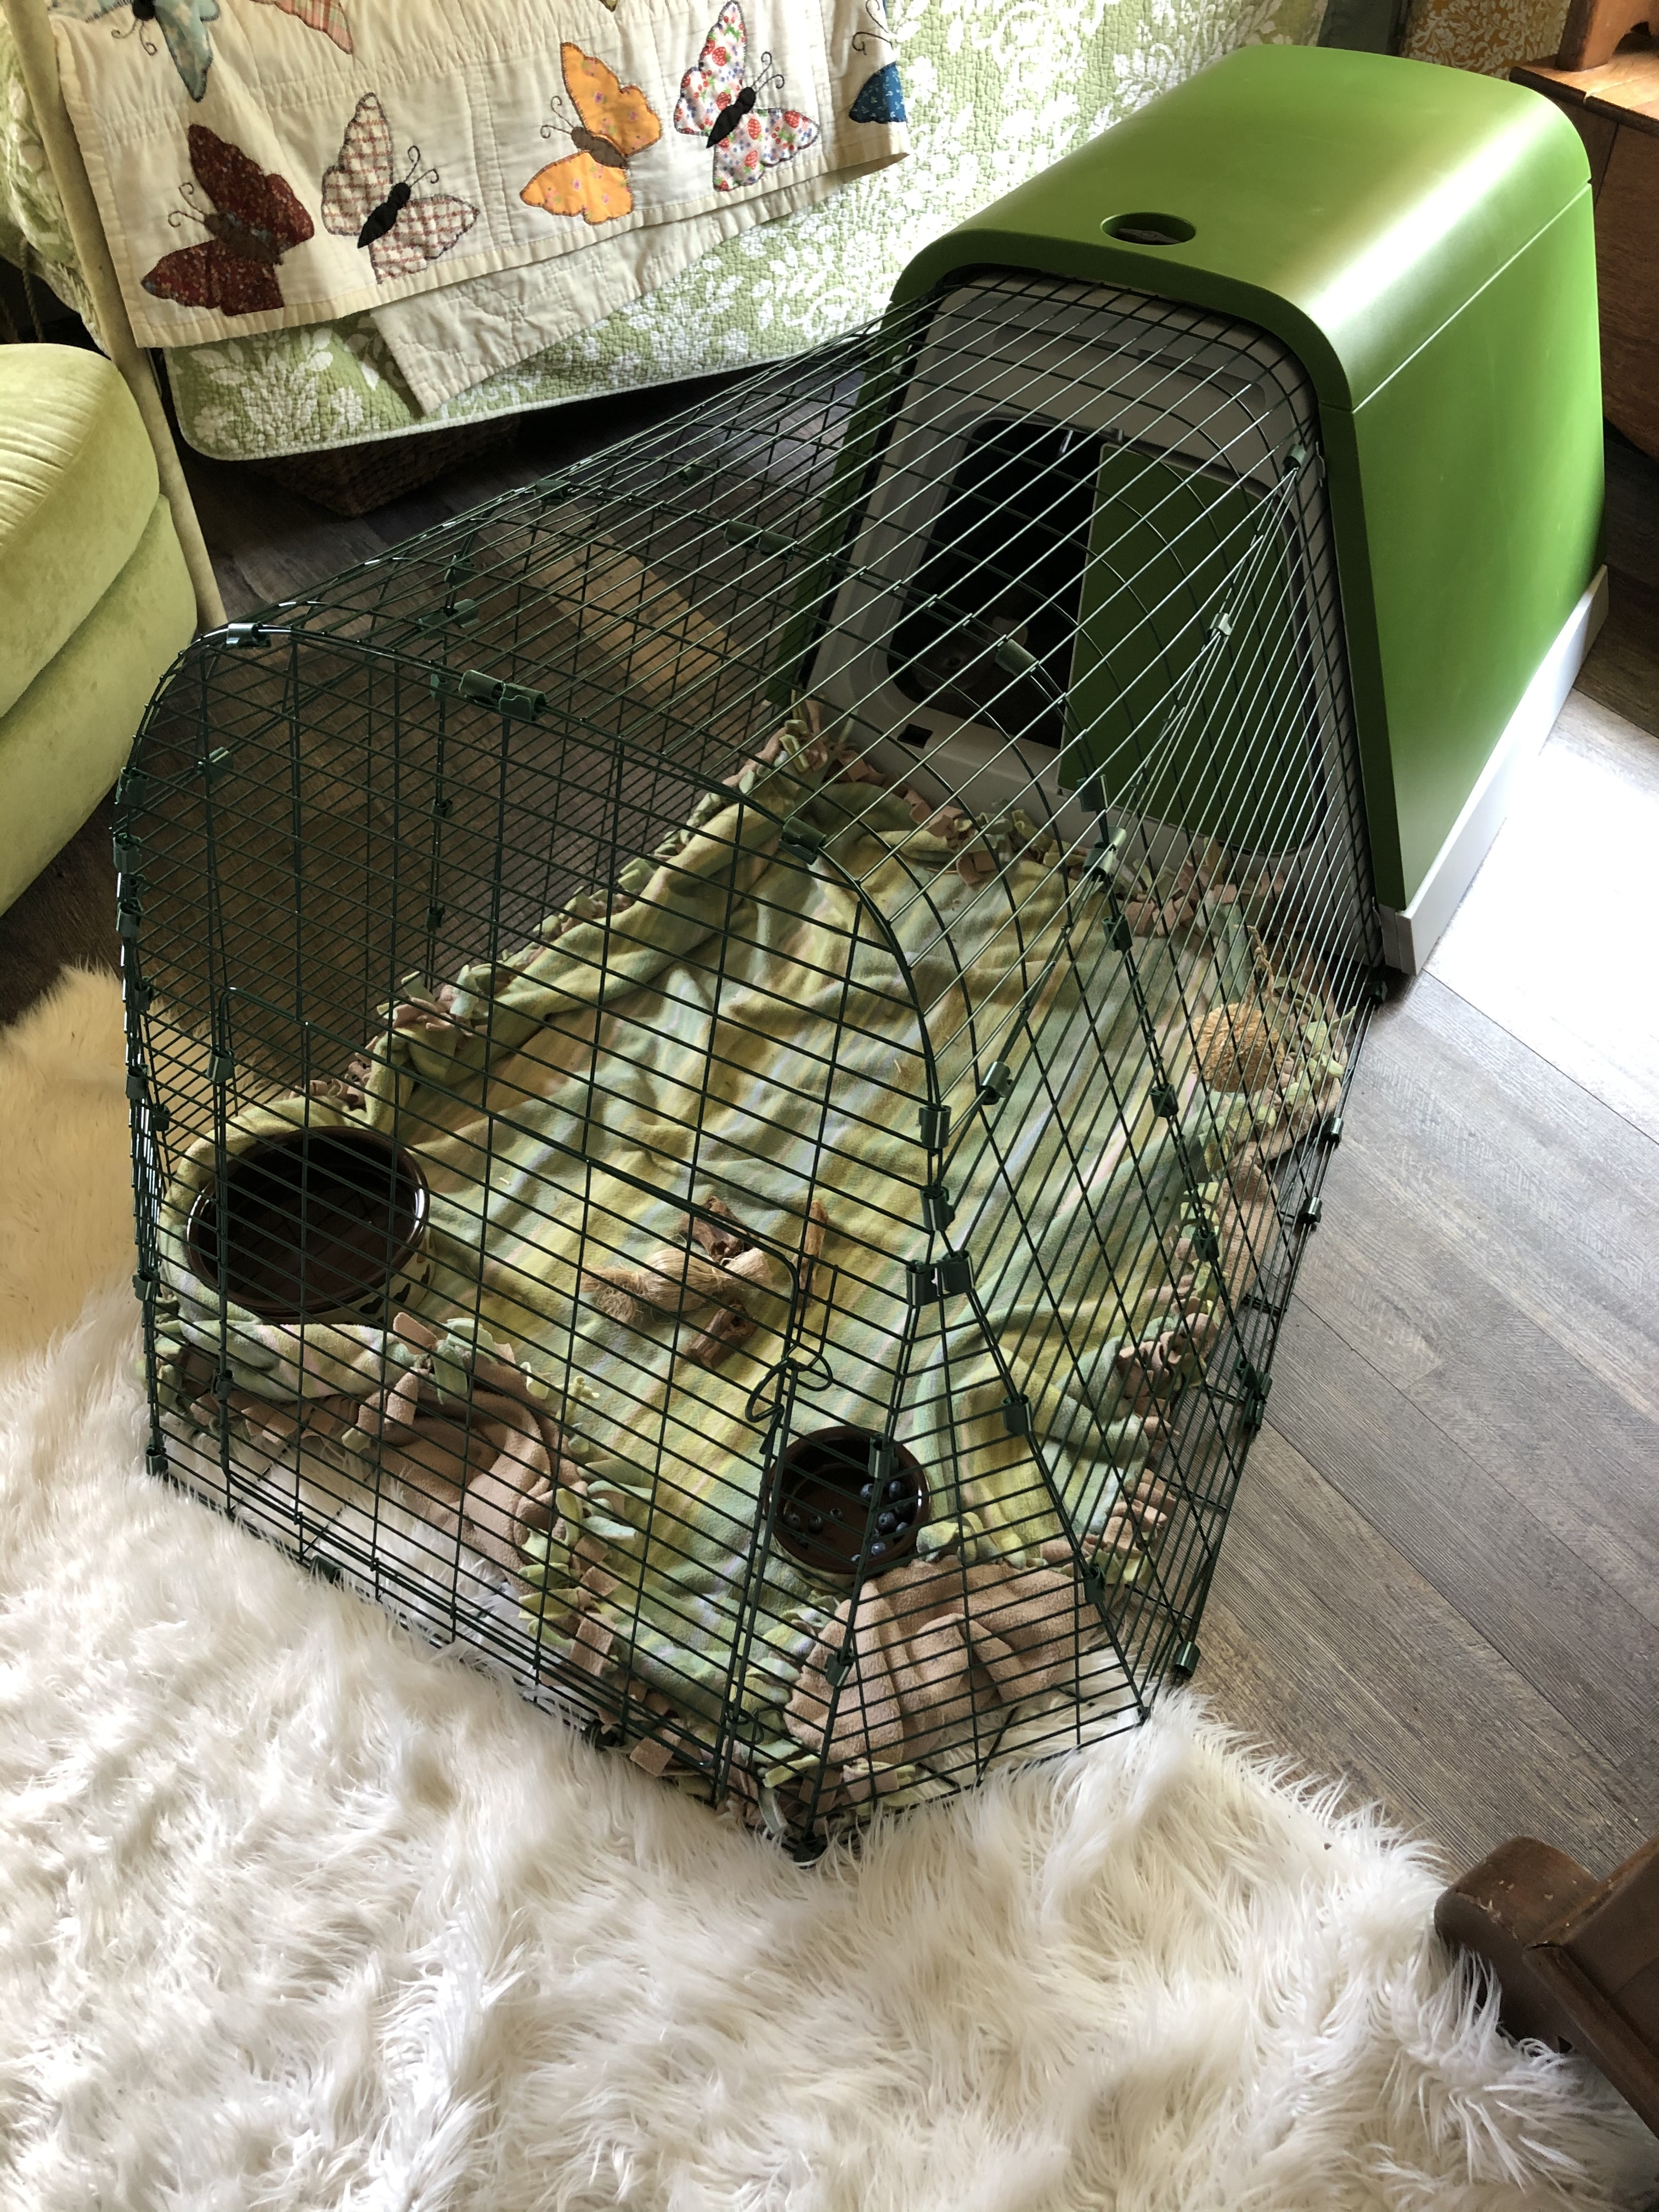 An Eglu Go hutch for guinea pigs setup inside.